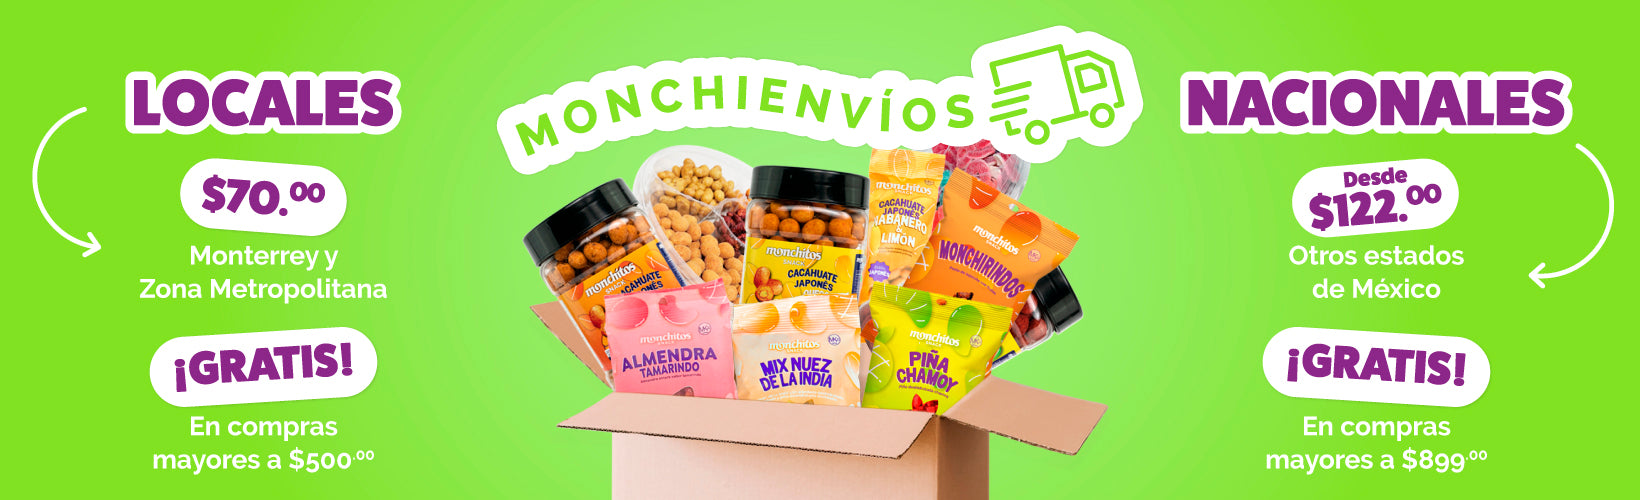 monchitos-snack